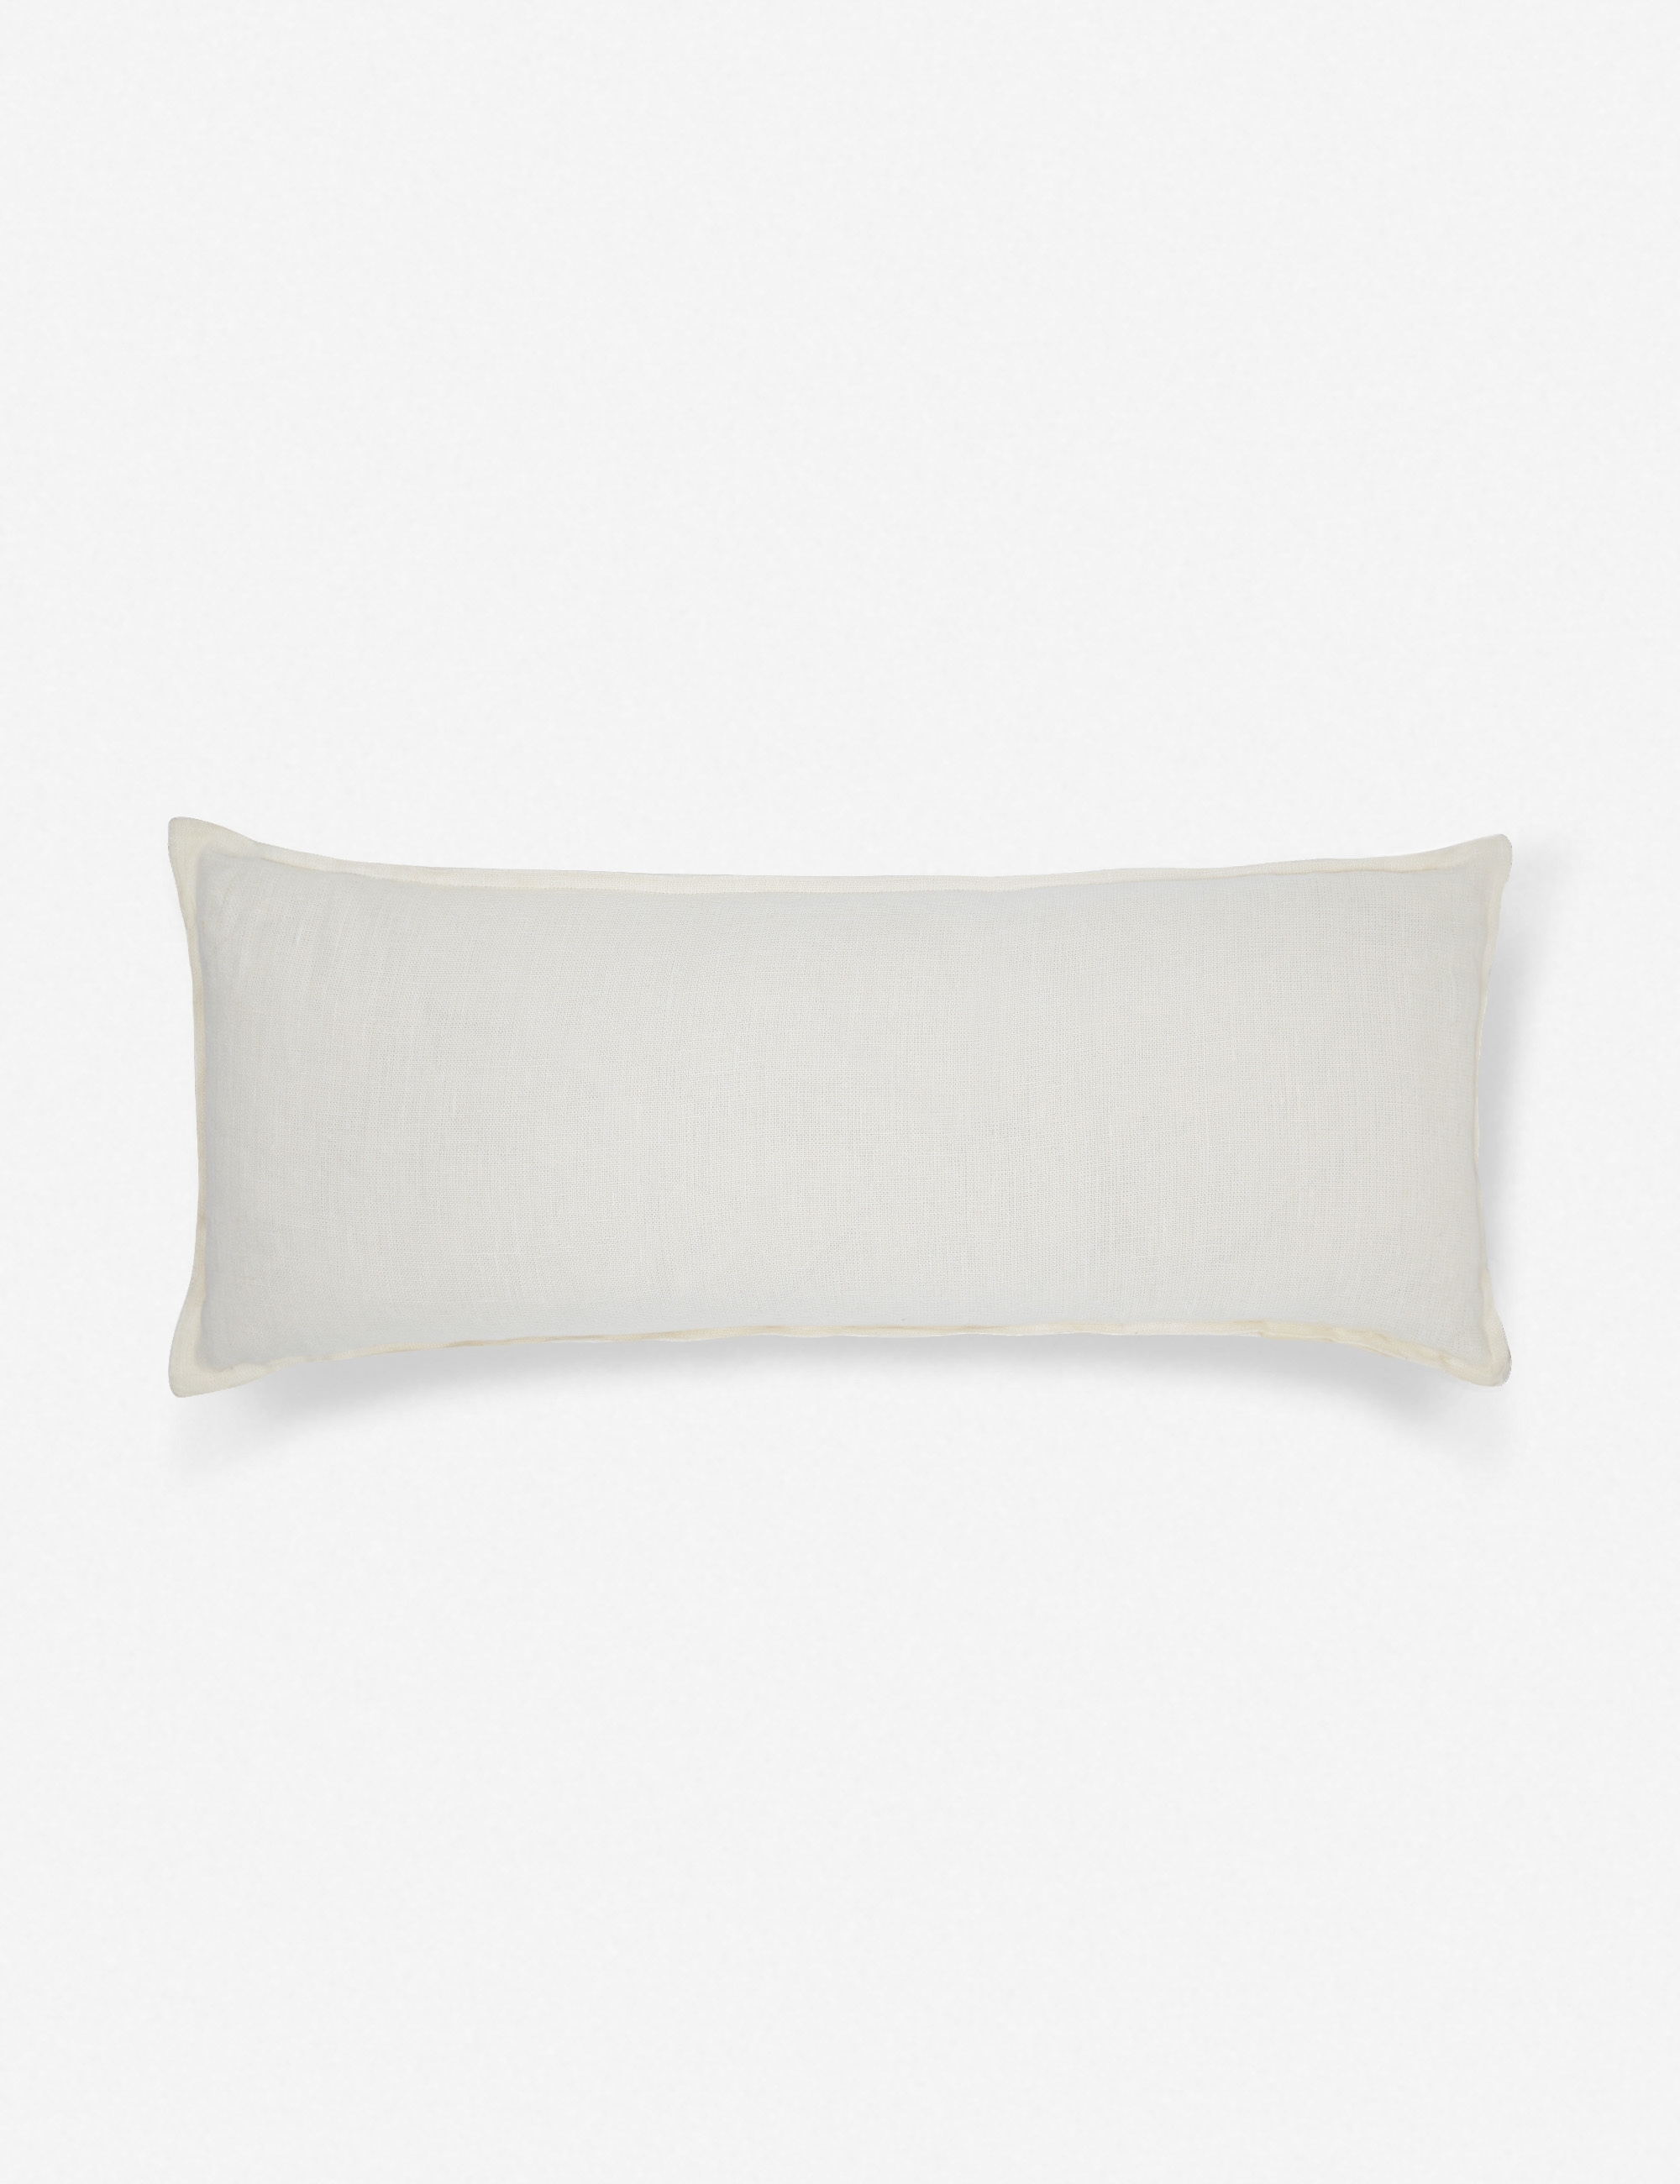 Arlo Linen Long Lumbar Pillow, Ivory - Image 0